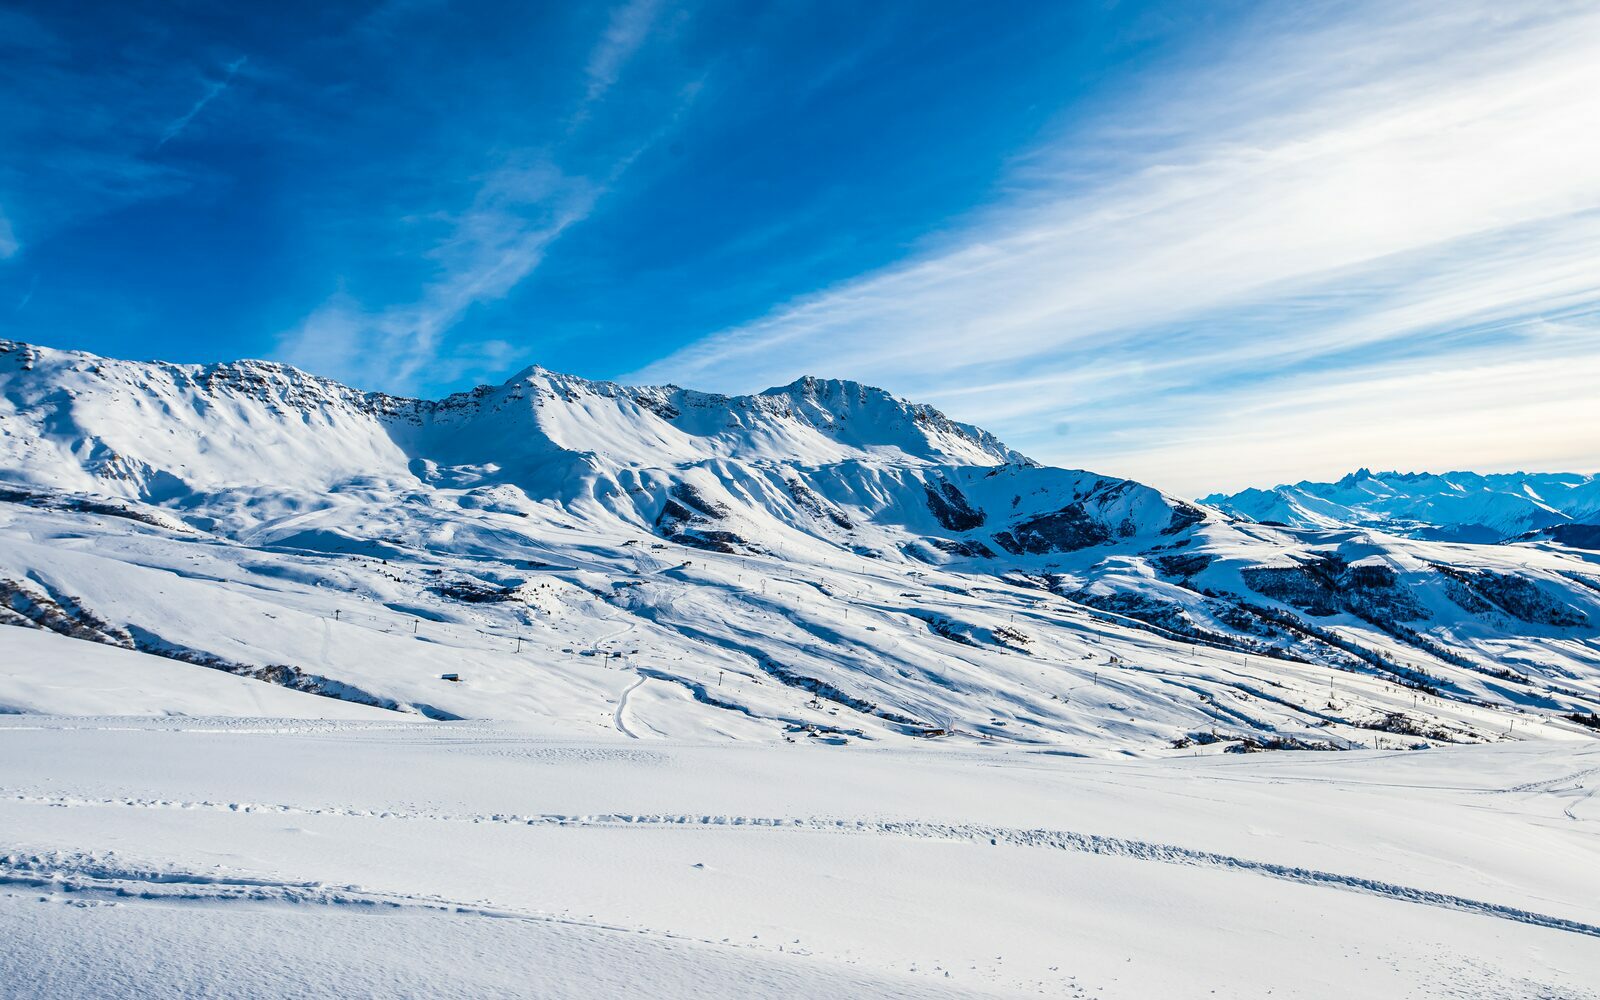 Le Grand Domaine ski area